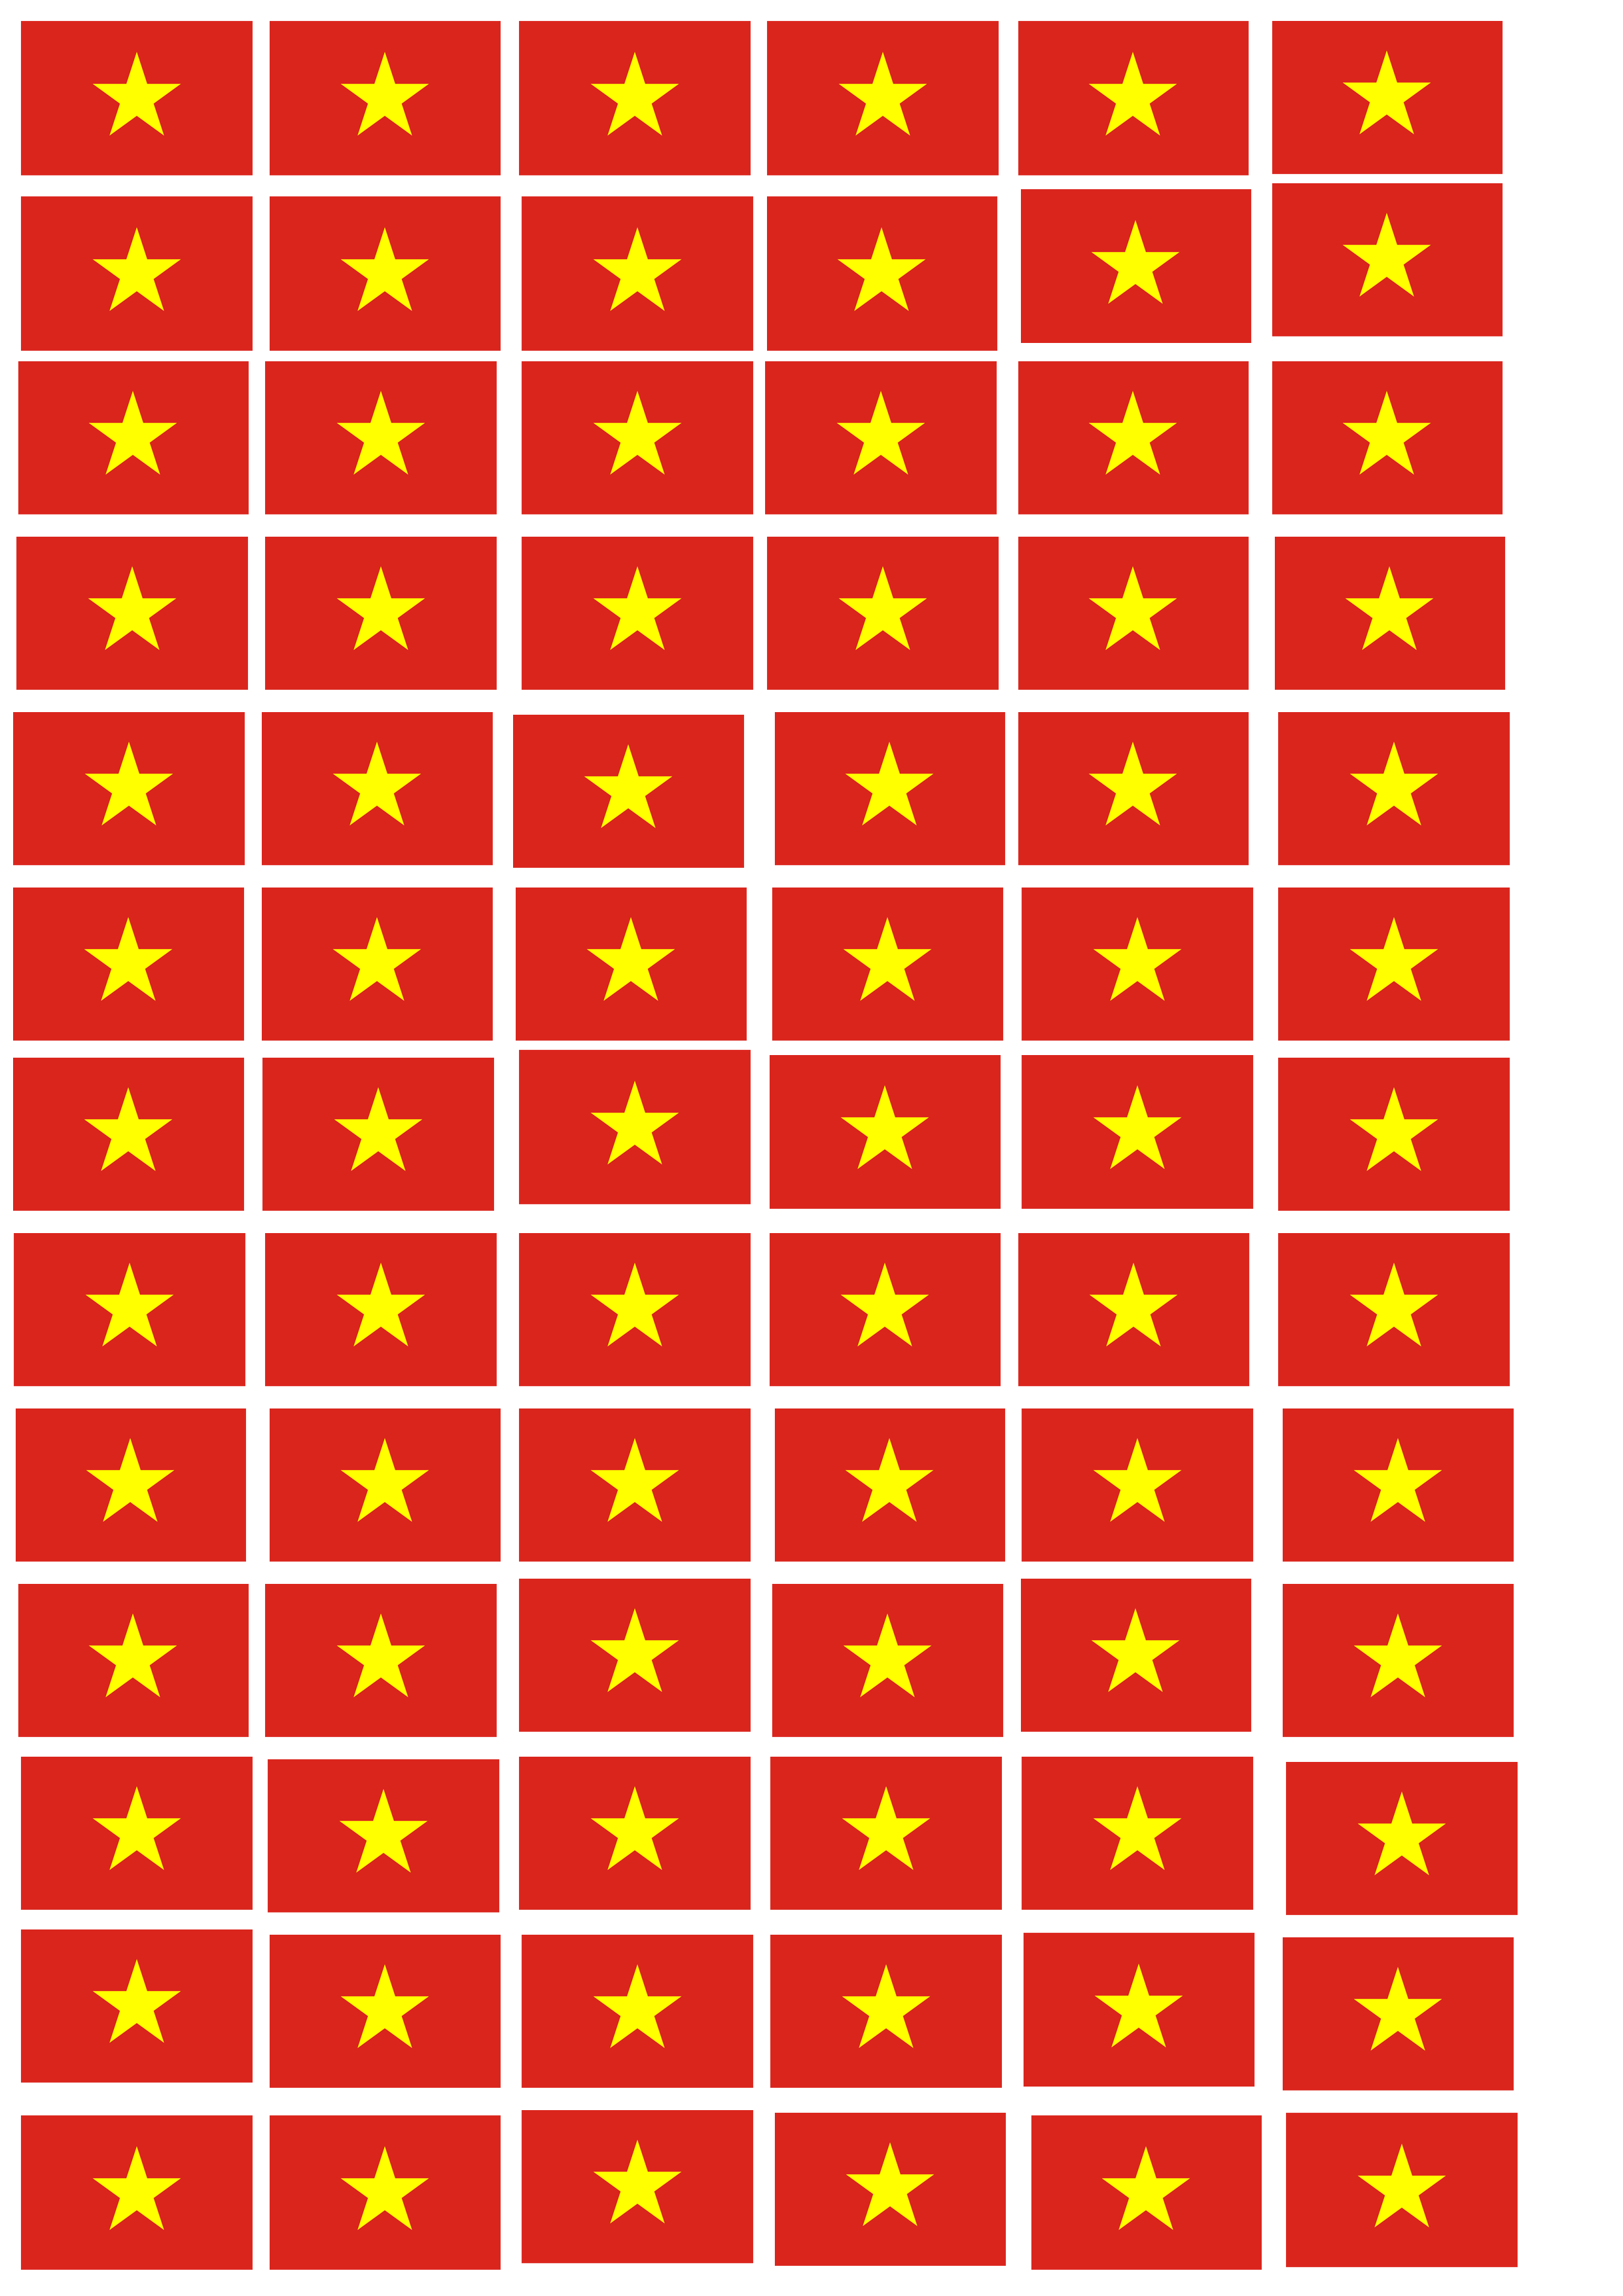 Hình dán lá cờ Việt Nam: Chiêm ngưỡng hình dán lá cờ Việt Nam thật ý nghĩa và đẹp mắt. Với việc sử dụng công nghệ in ấn hiện đại, màu sắc trên lá cờ được tái hiện rực rỡ và sắc nét. Với mỗi mẫu hình dán lá cờ Việt Nam, chúng ta còn có thể tùy ý lựa chọn kích thước và chất liệu phù hợp với mục đích sử dụng.